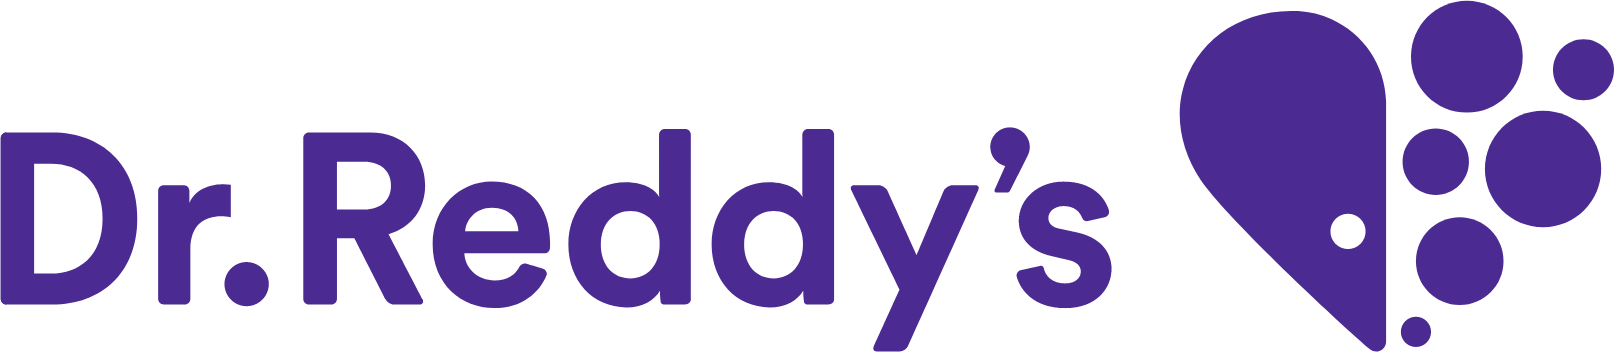 Dr. Reddy's logo large (transparent PNG)